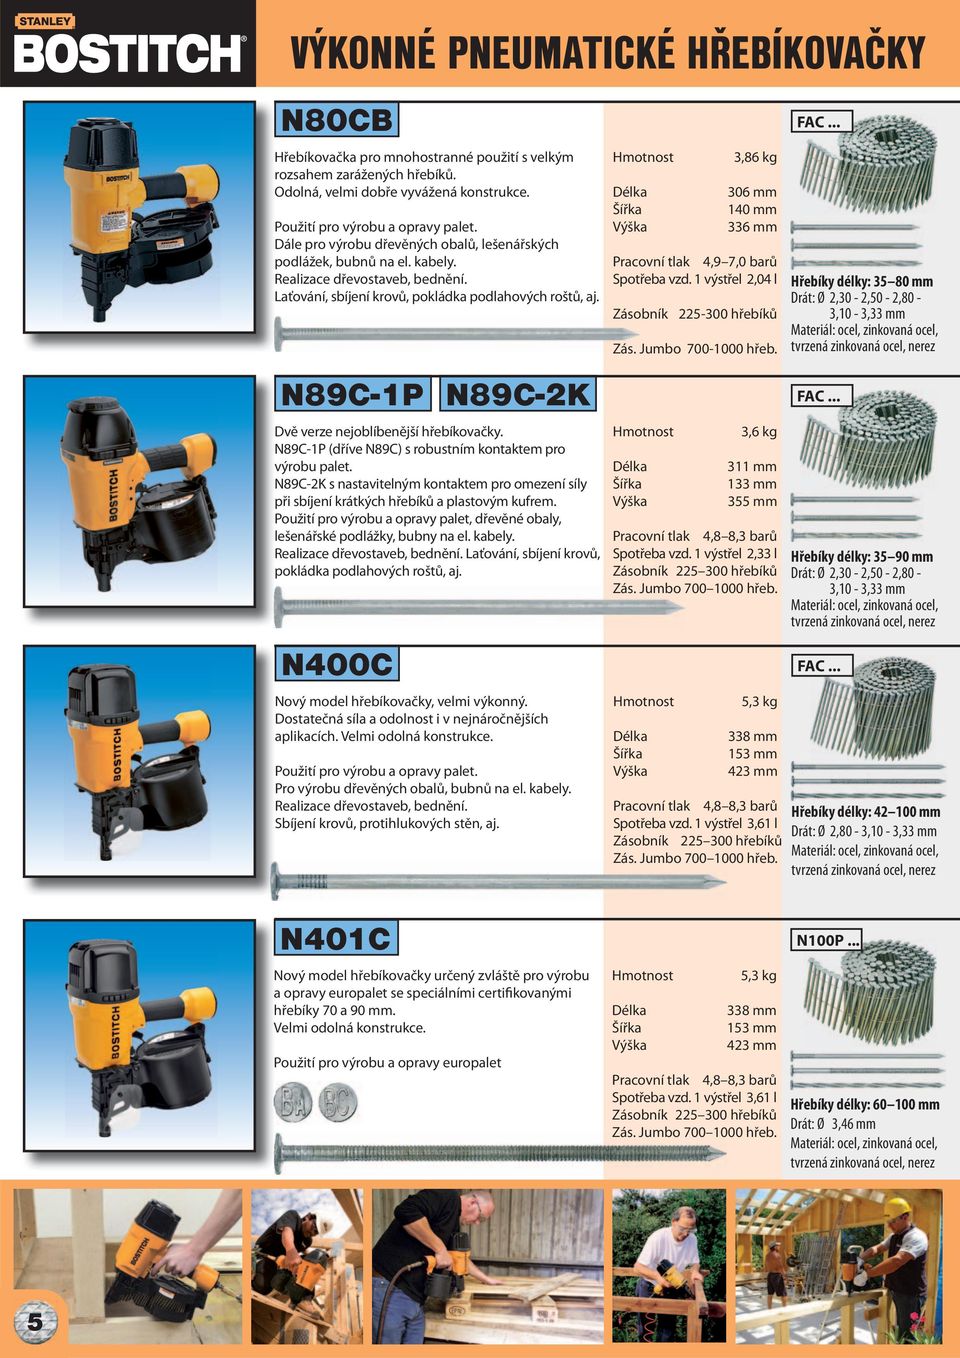 N89C-1P N89C-2K Dvě verze nejoblíbenější hřebíkovačky. N89C-1P (dříve N89C) s robustním kontaktem pro výrobu palet.